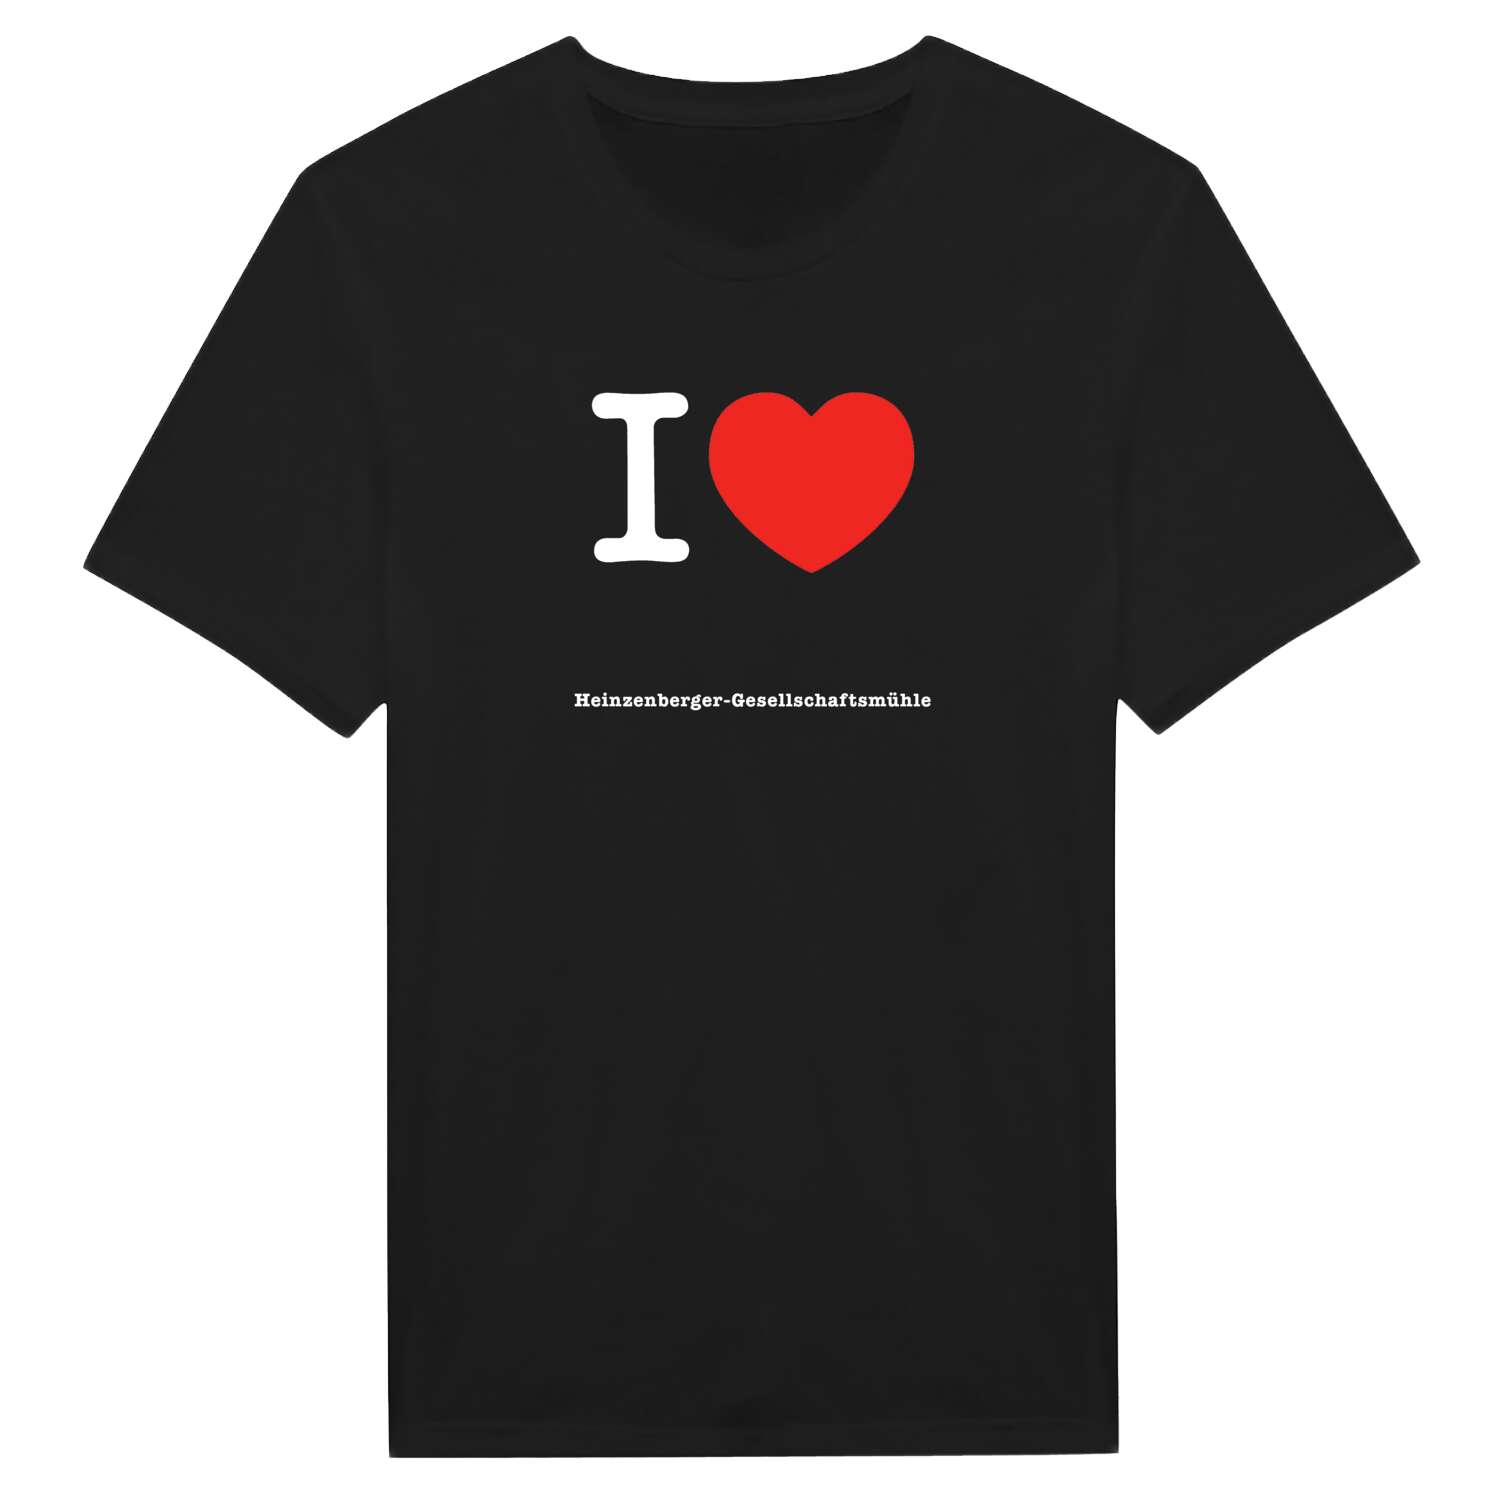 Heinzenberger-Gesellschaftsmühle T-Shirt »I love«